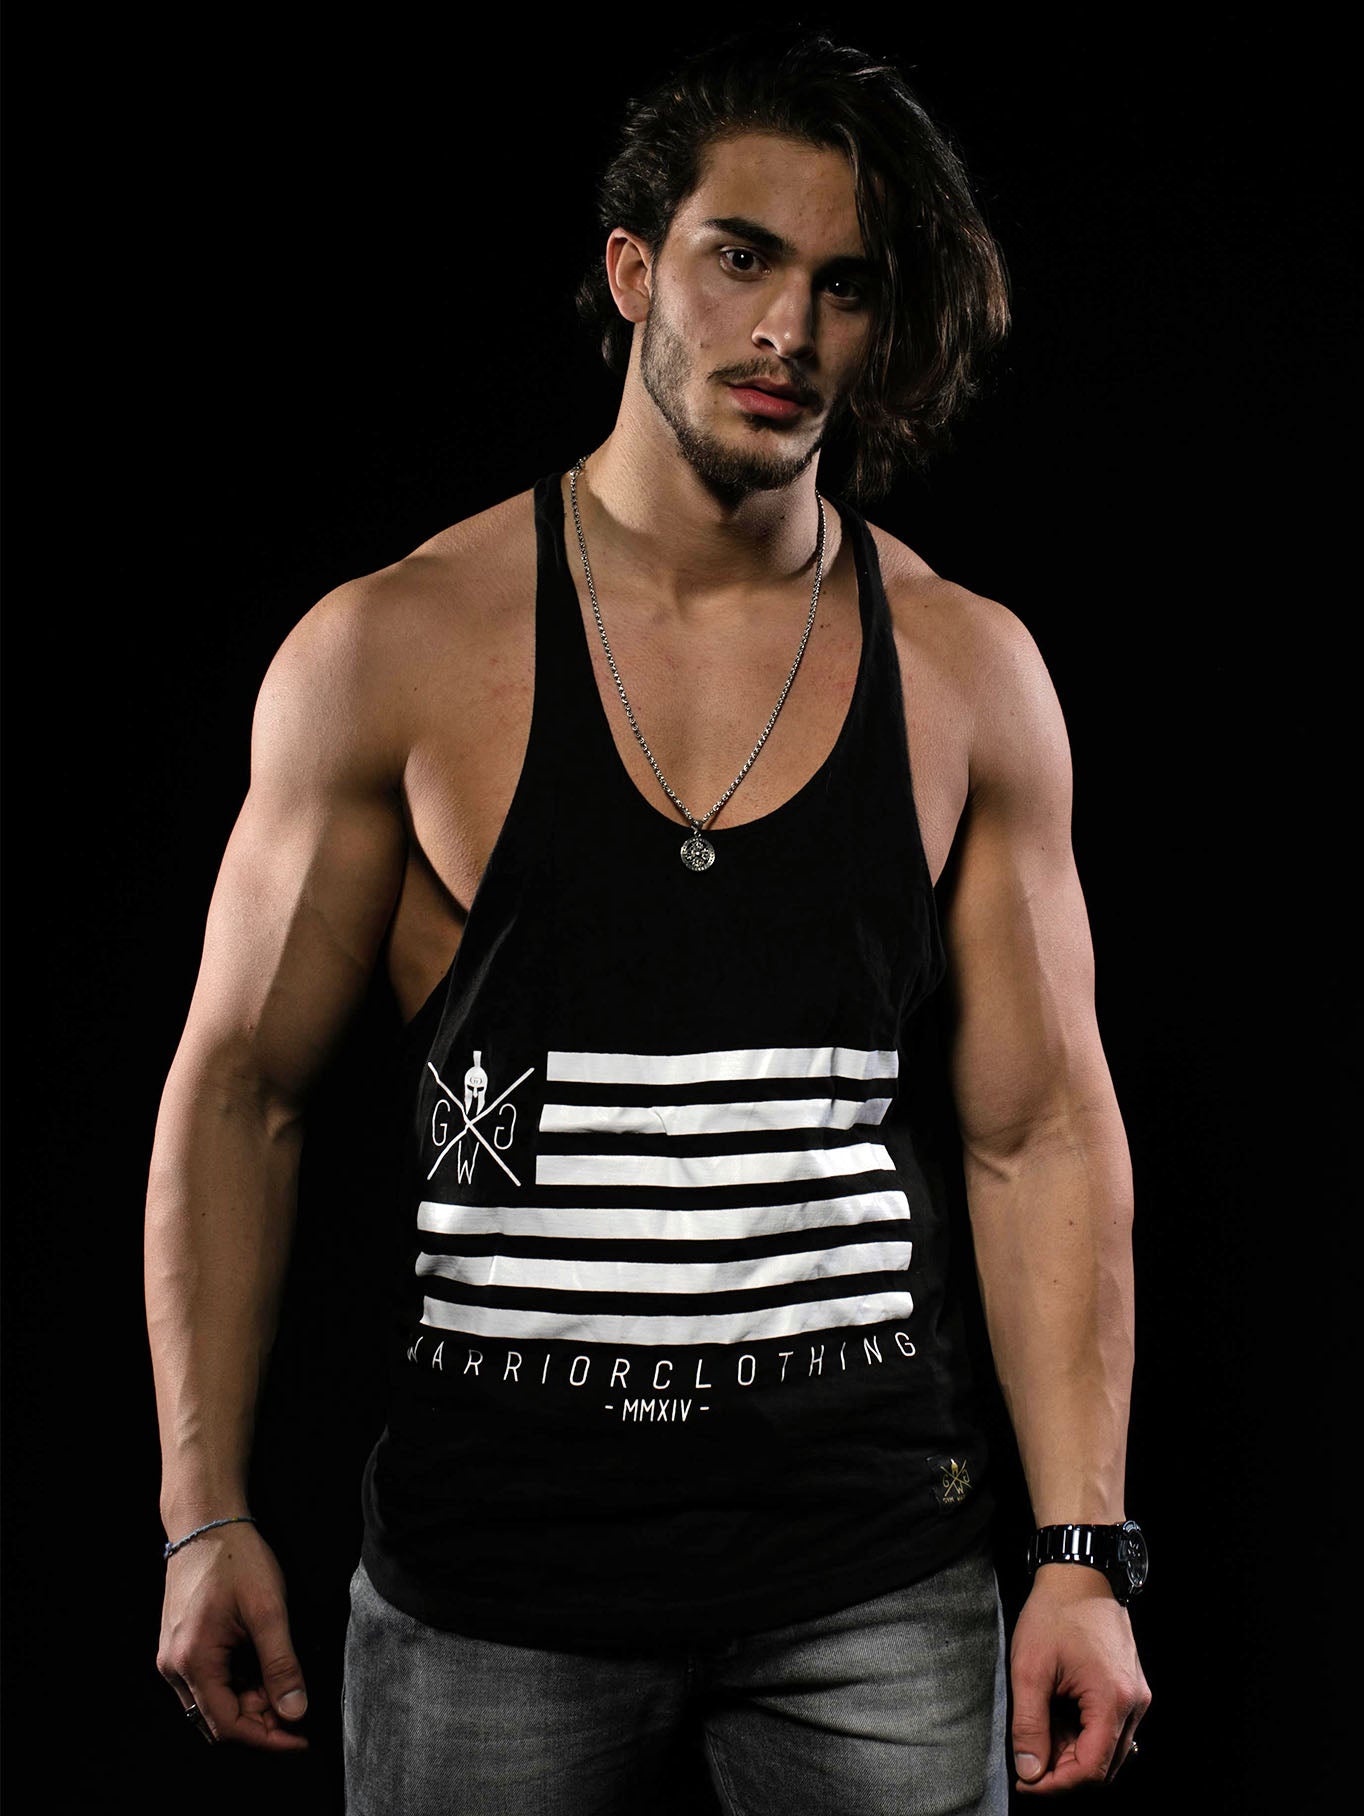 Schwarzes Stringer Tank Top für Herren von Gym Generation mit 'Warrior Clothing' Schriftzug